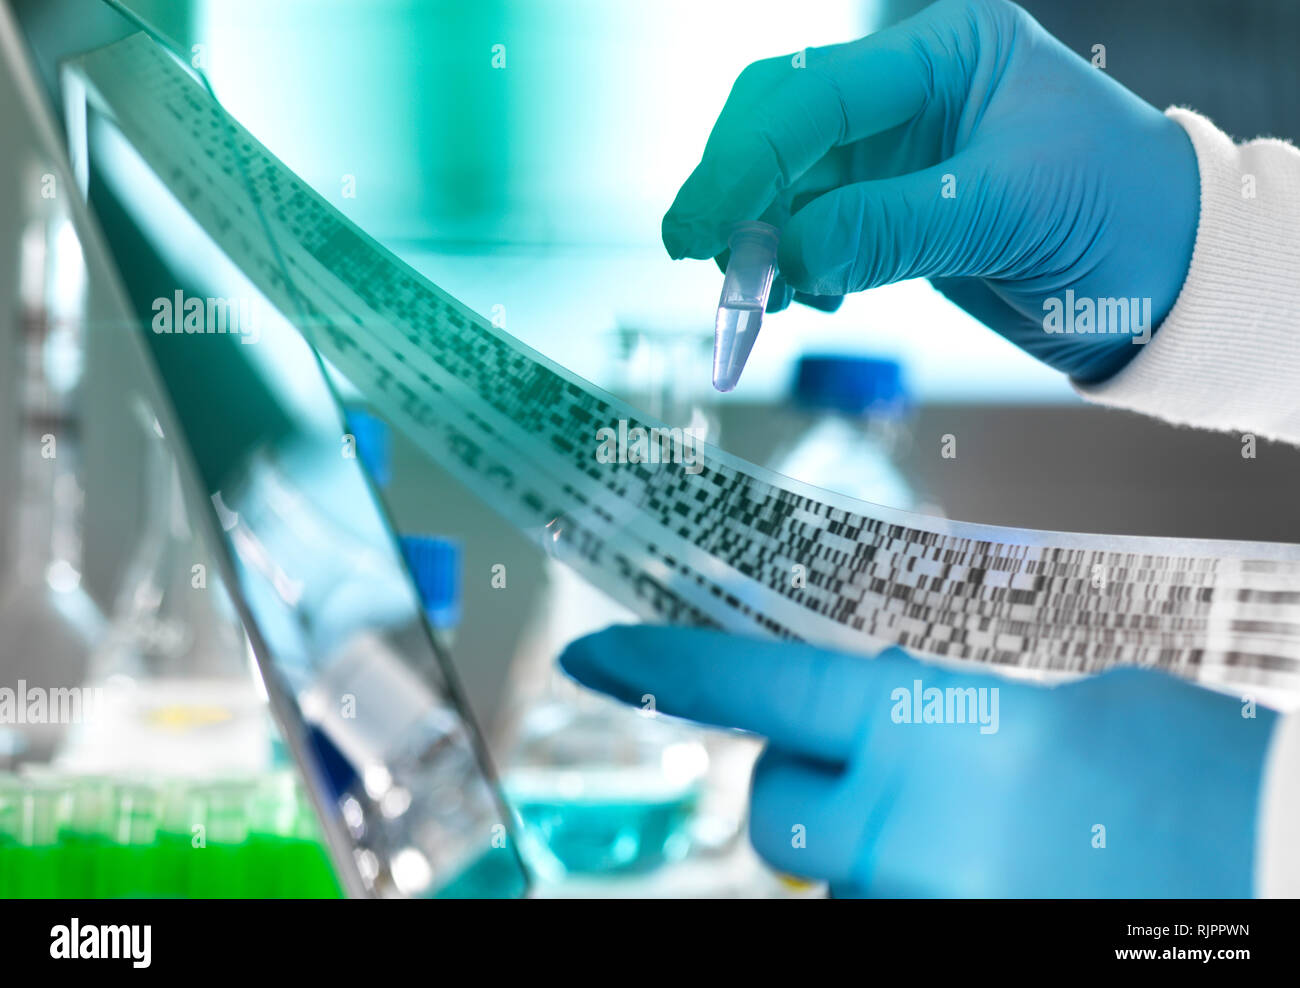 Forschung Wissenschaftler eine Probe in einer Durchstechflasche mit DNA-Ergebnisse auf autoradiogram Gel im Labor, in der Nahaufnahme einer Hand, Stockfoto